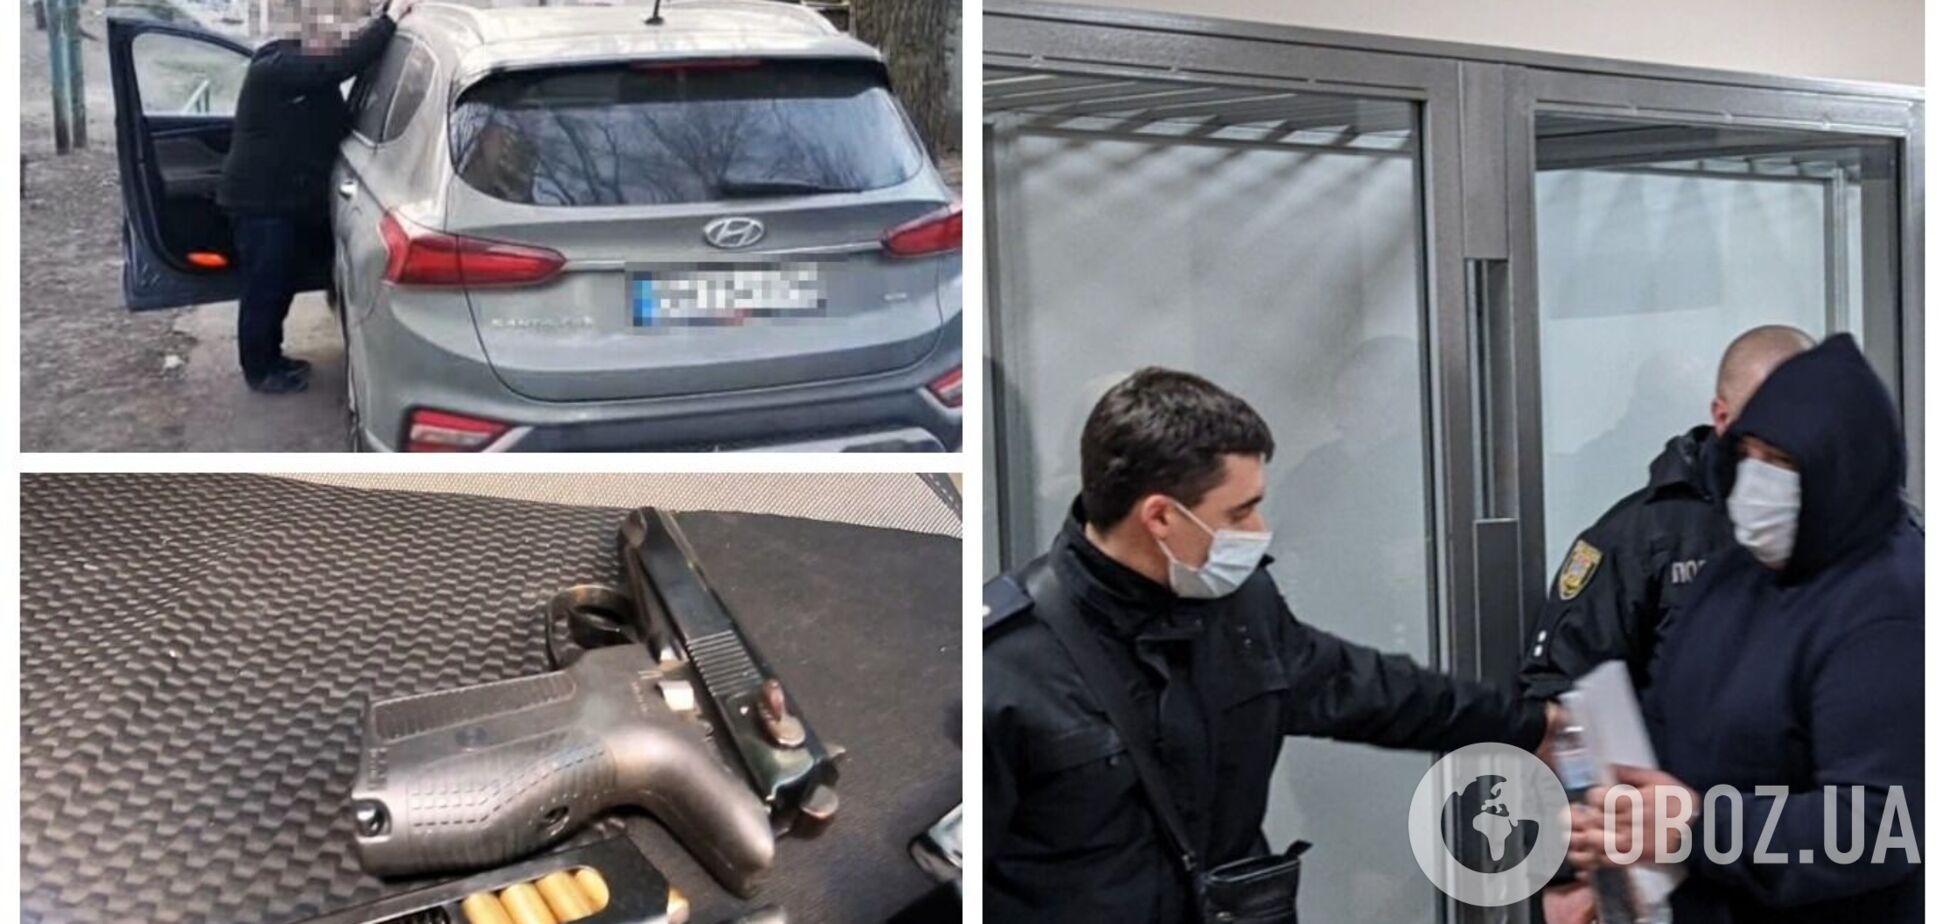 Мужа украинской певицы заподозрили в угоне авто: всплыли детали скандала. Видео и фото